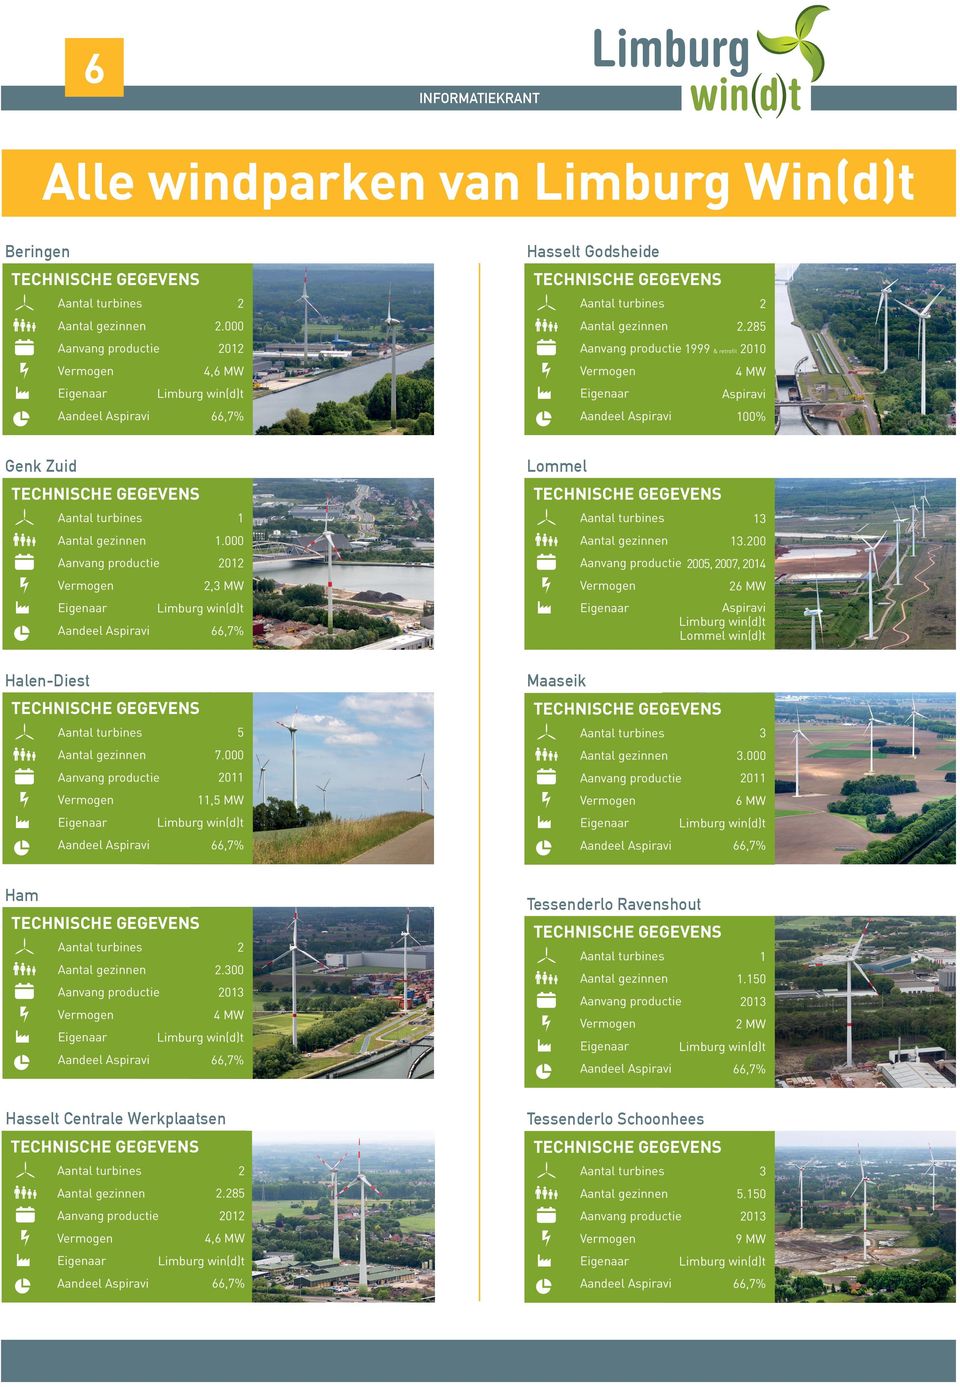 00 01 005, 007, 014,3 MW 6 MW Aspiravi Lommel win(d)t Maaseik Halen-Diest 5 3 7.000 3.